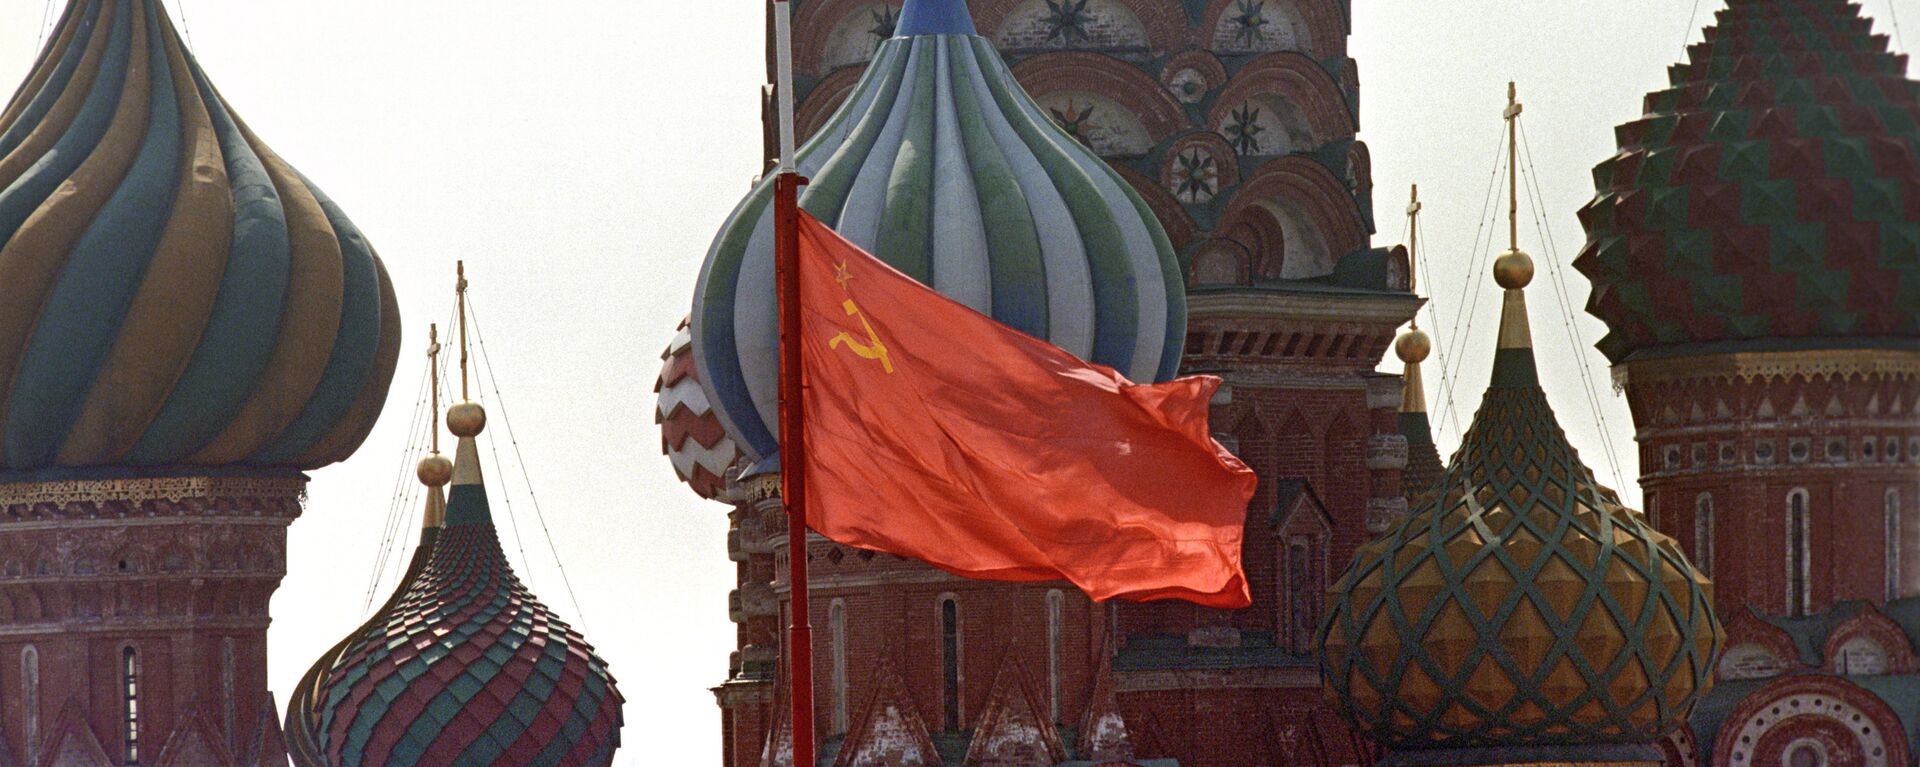 Quốc ky Liên Xô - Sputnik Việt Nam, 1920, 04.11.2021